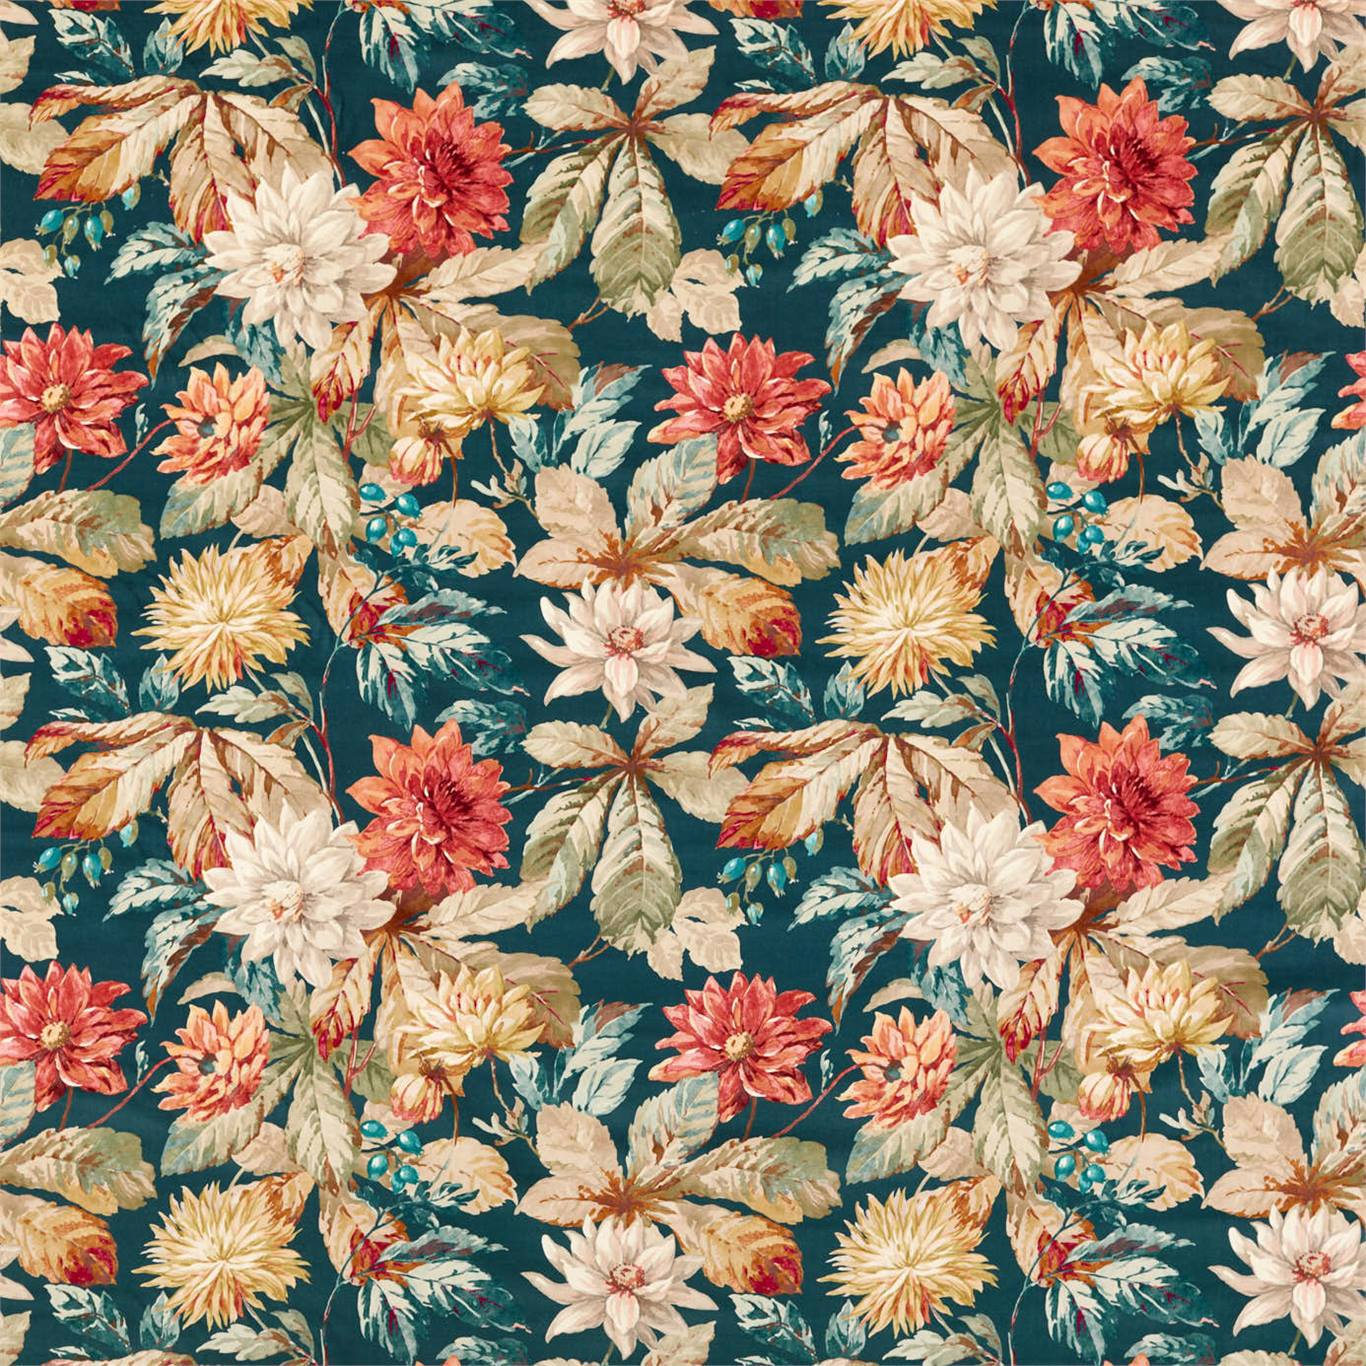 Dahlia & Rosehip Velvets Teal/Russet (Velvet) Fabric by SAN